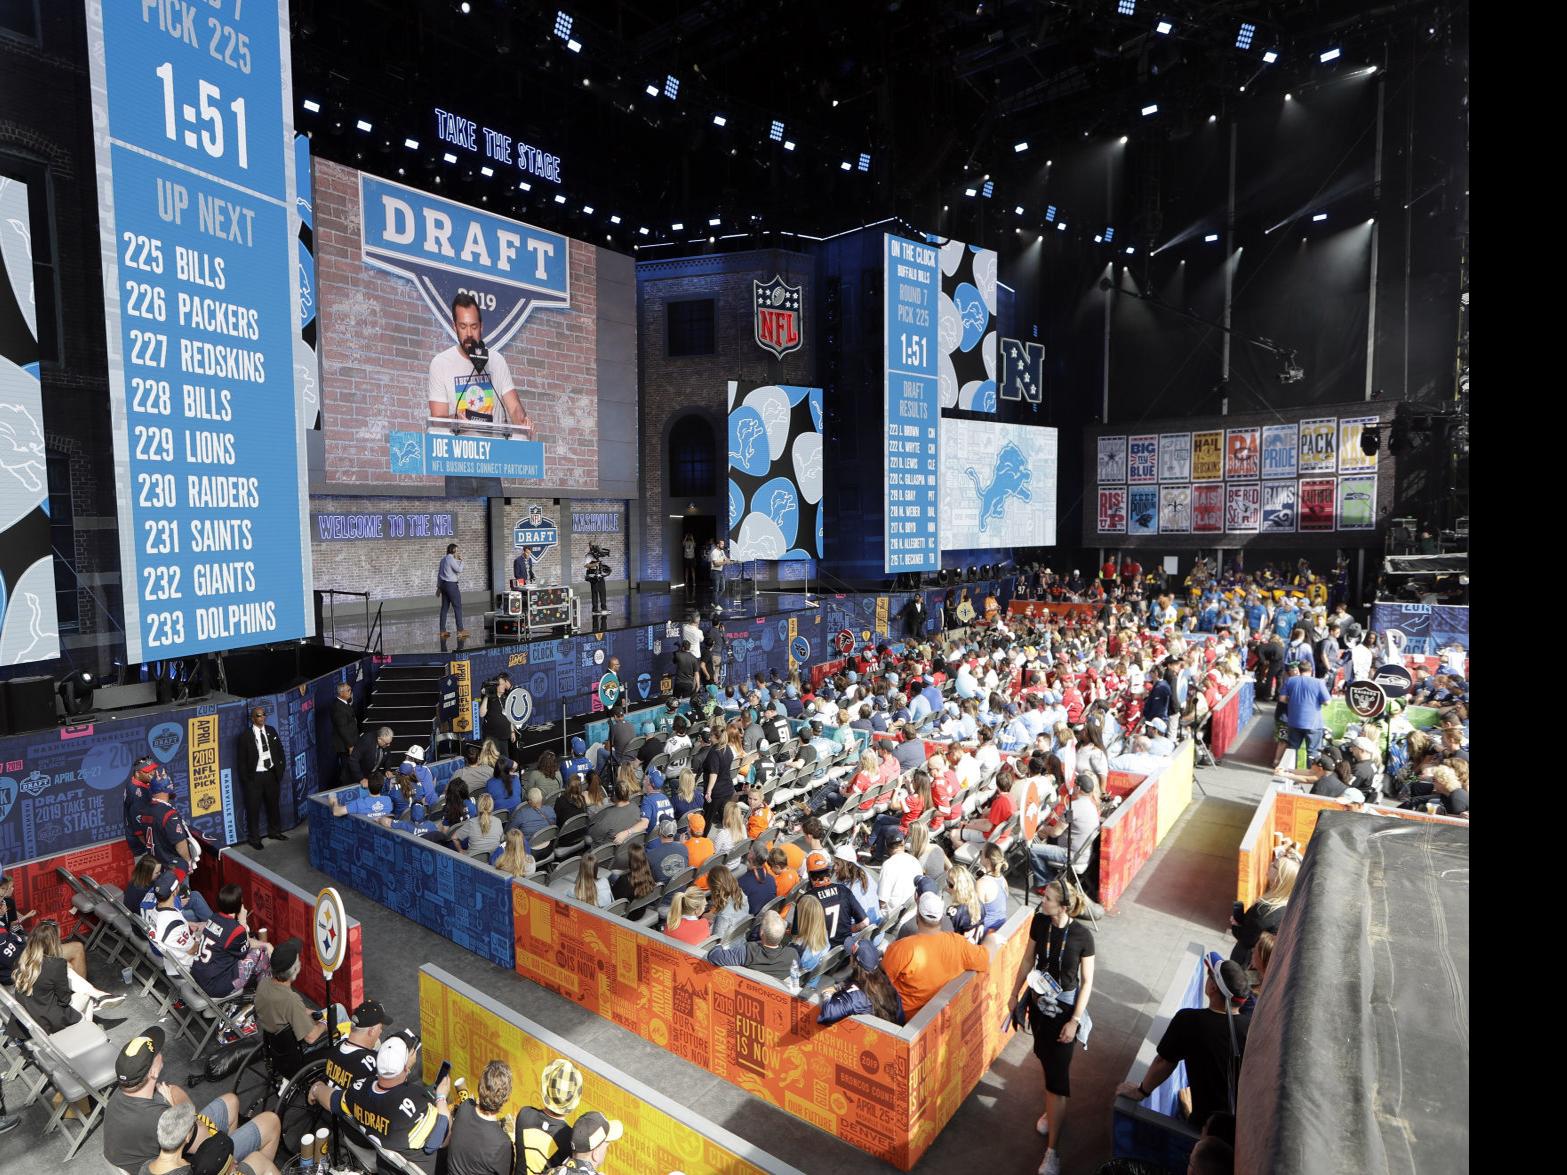 2019 NFL draft awarded to Nashville over Denver